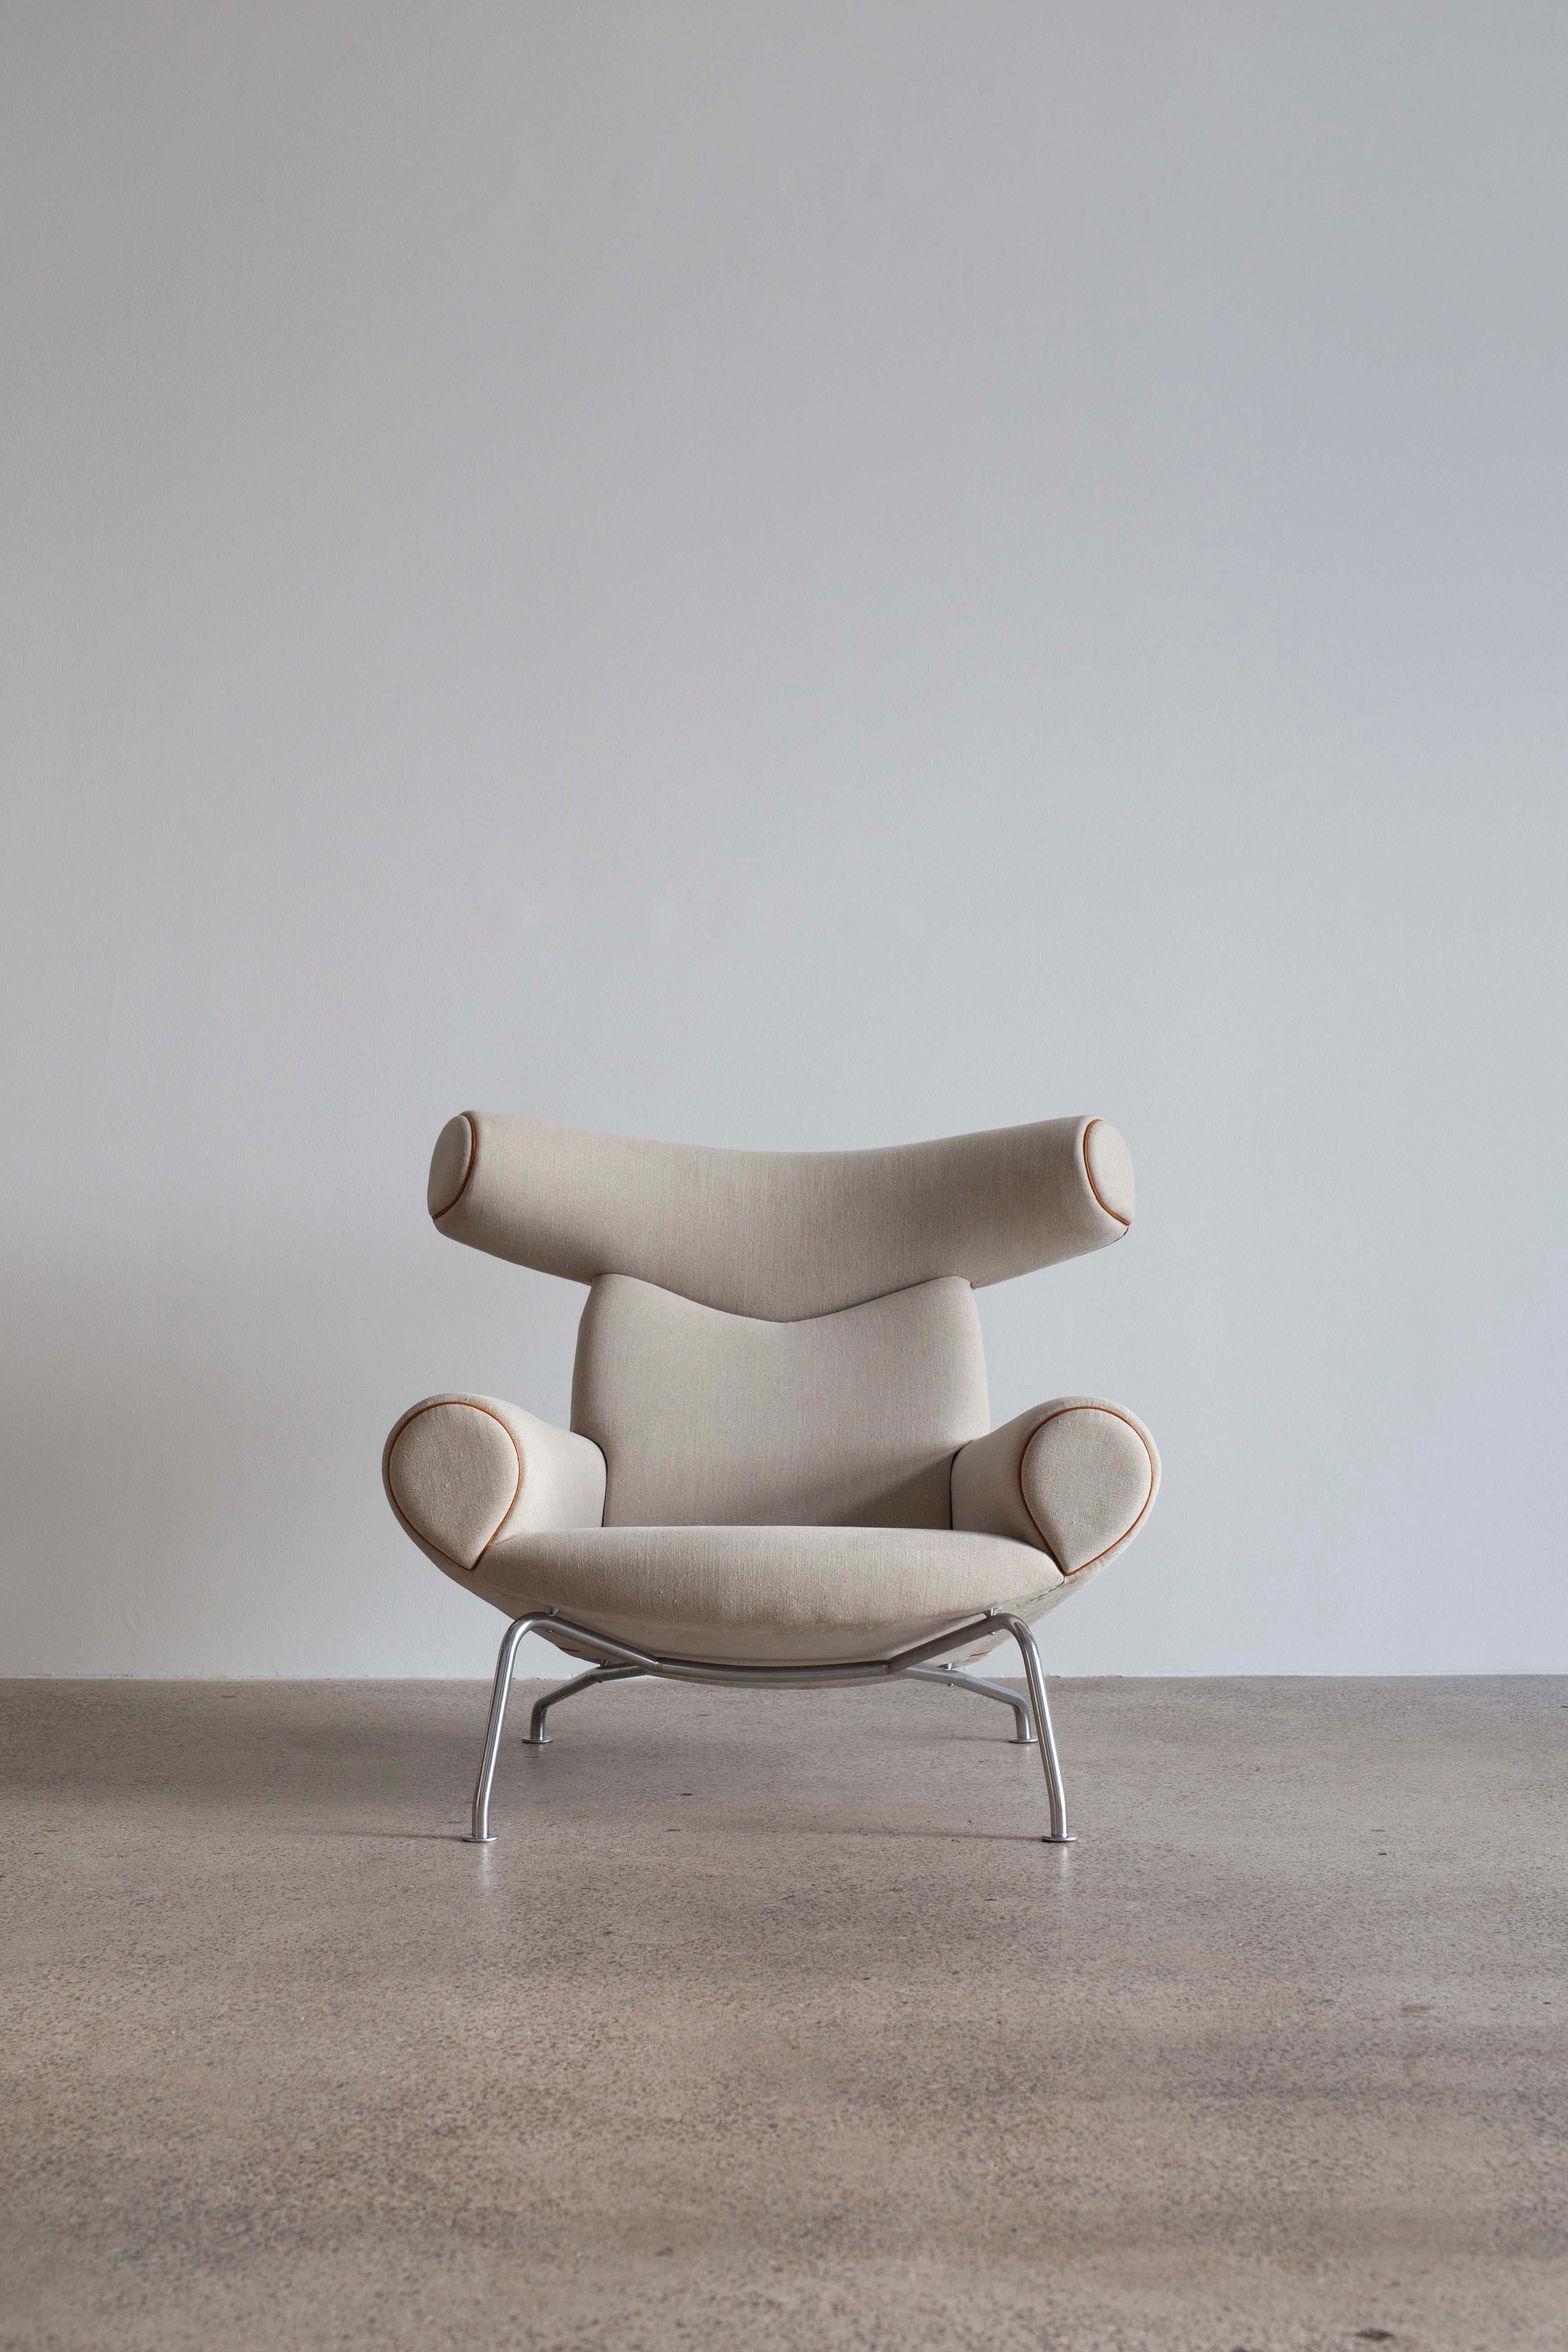 Une paire de chaises de bœuf Hans J. Wegner avec une structure en acier tubulaire tapissée de tissu en toile légère et de passepoils en cuir.
Conçu en 1960 et fabriqué chez AP Stolen, Danemark modèle AP46 et AP47.
Très bel état restauré.